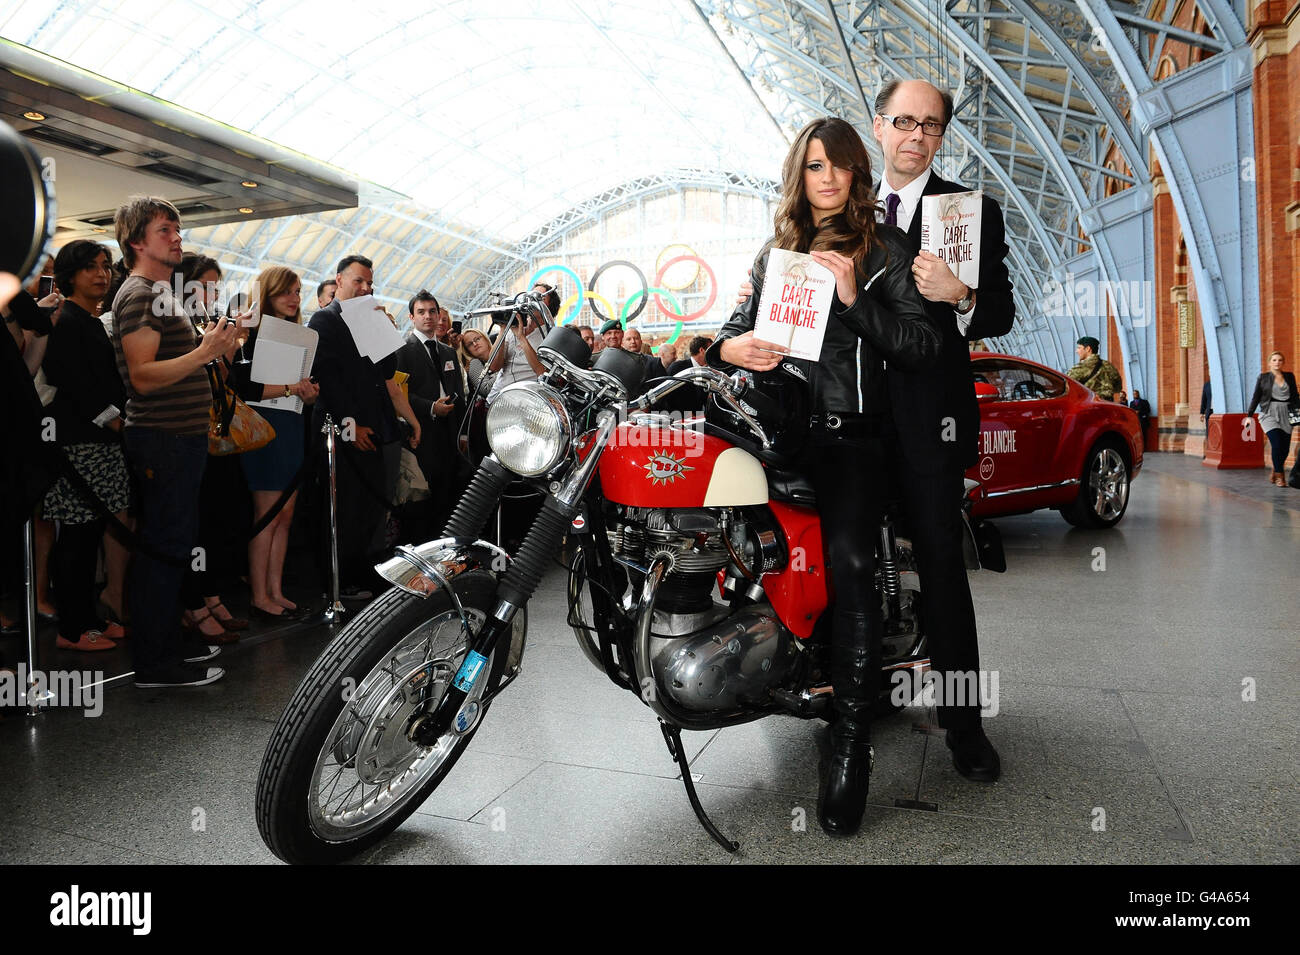 Der Thriller Jeffery Deaver kommt mit einem Bond-Mädchen an, um seinen neuen James-Bond-Roman "Carte Blanche" während einer Fotozelle am Bahnhof St. Pancras in London zu promoten. Stockfoto